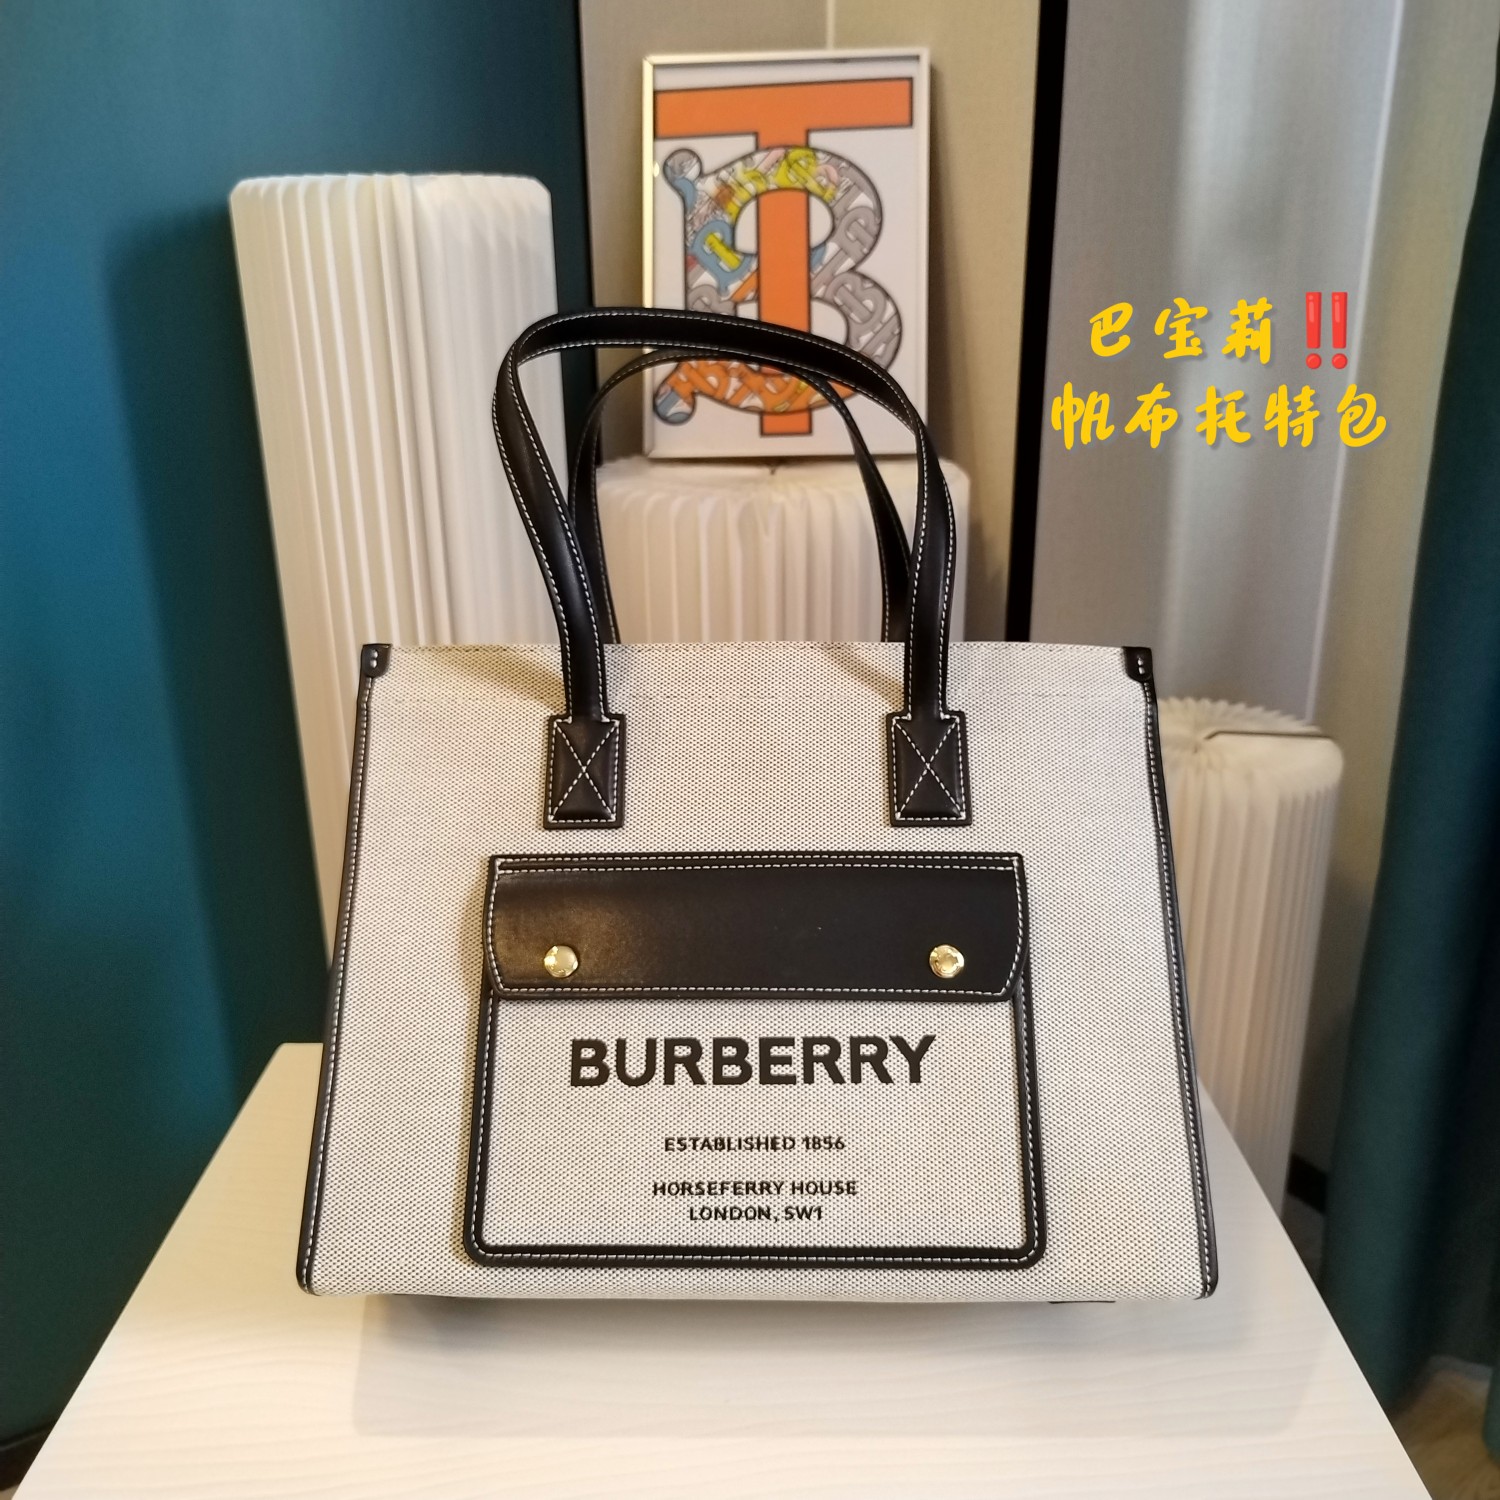 Burberry Handbags Crossbody & Shoulder Bags UK 7 Star Replica
 Fashion